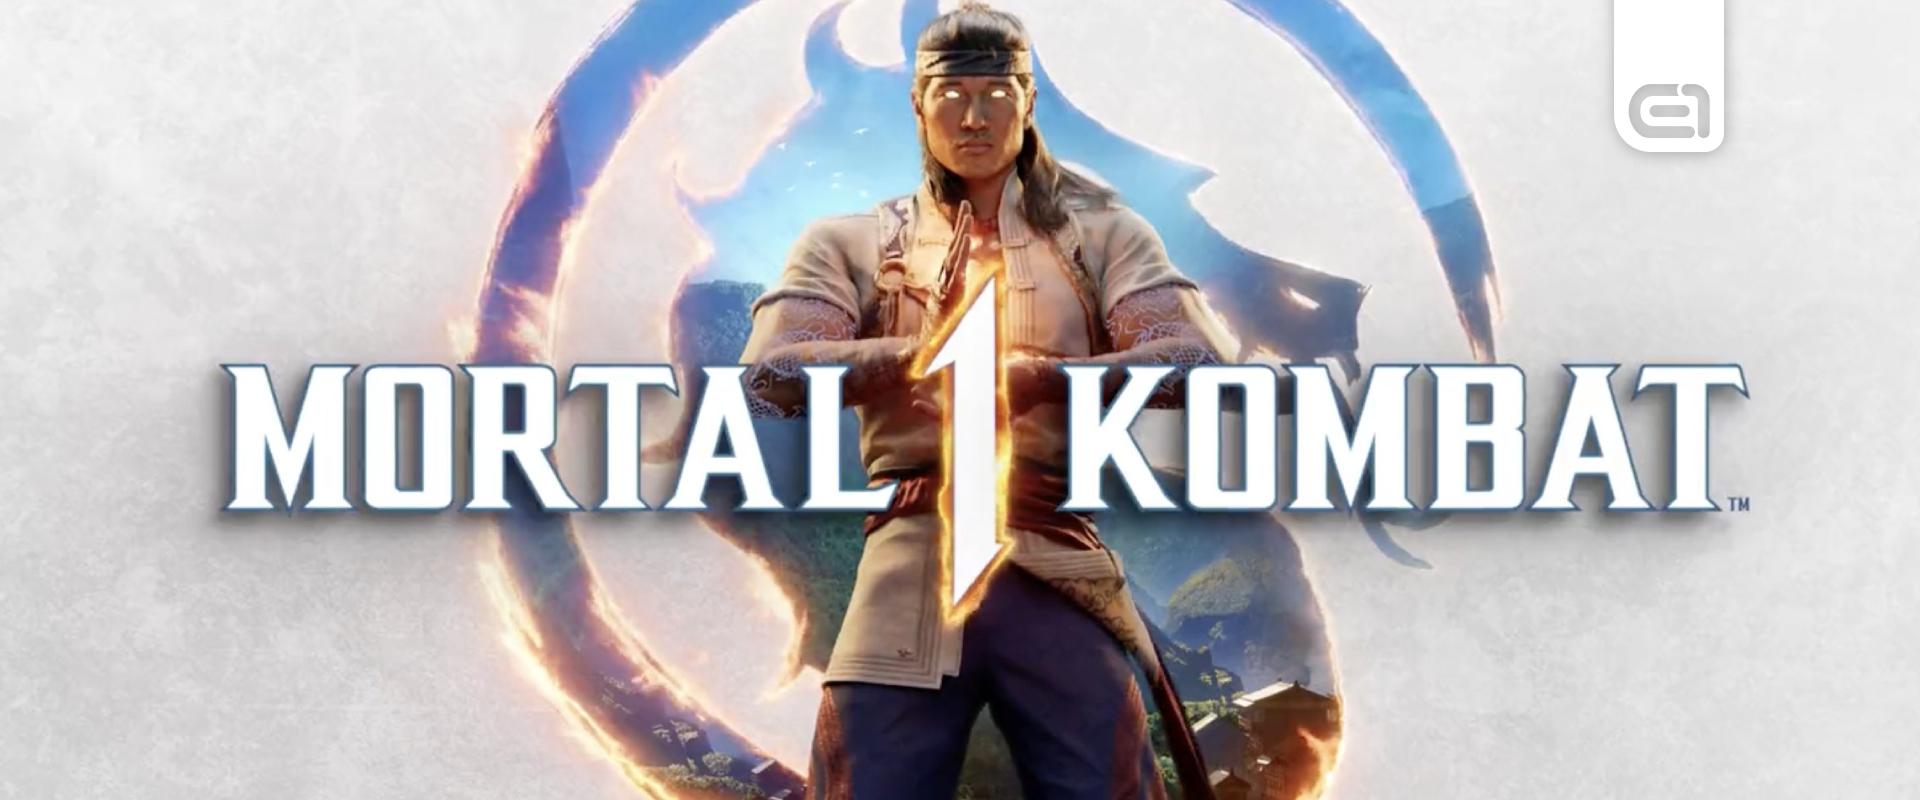 Ilyen vasra lesz szükséged, ha bírni akarod a Mortal Kombat 1 brutalitását